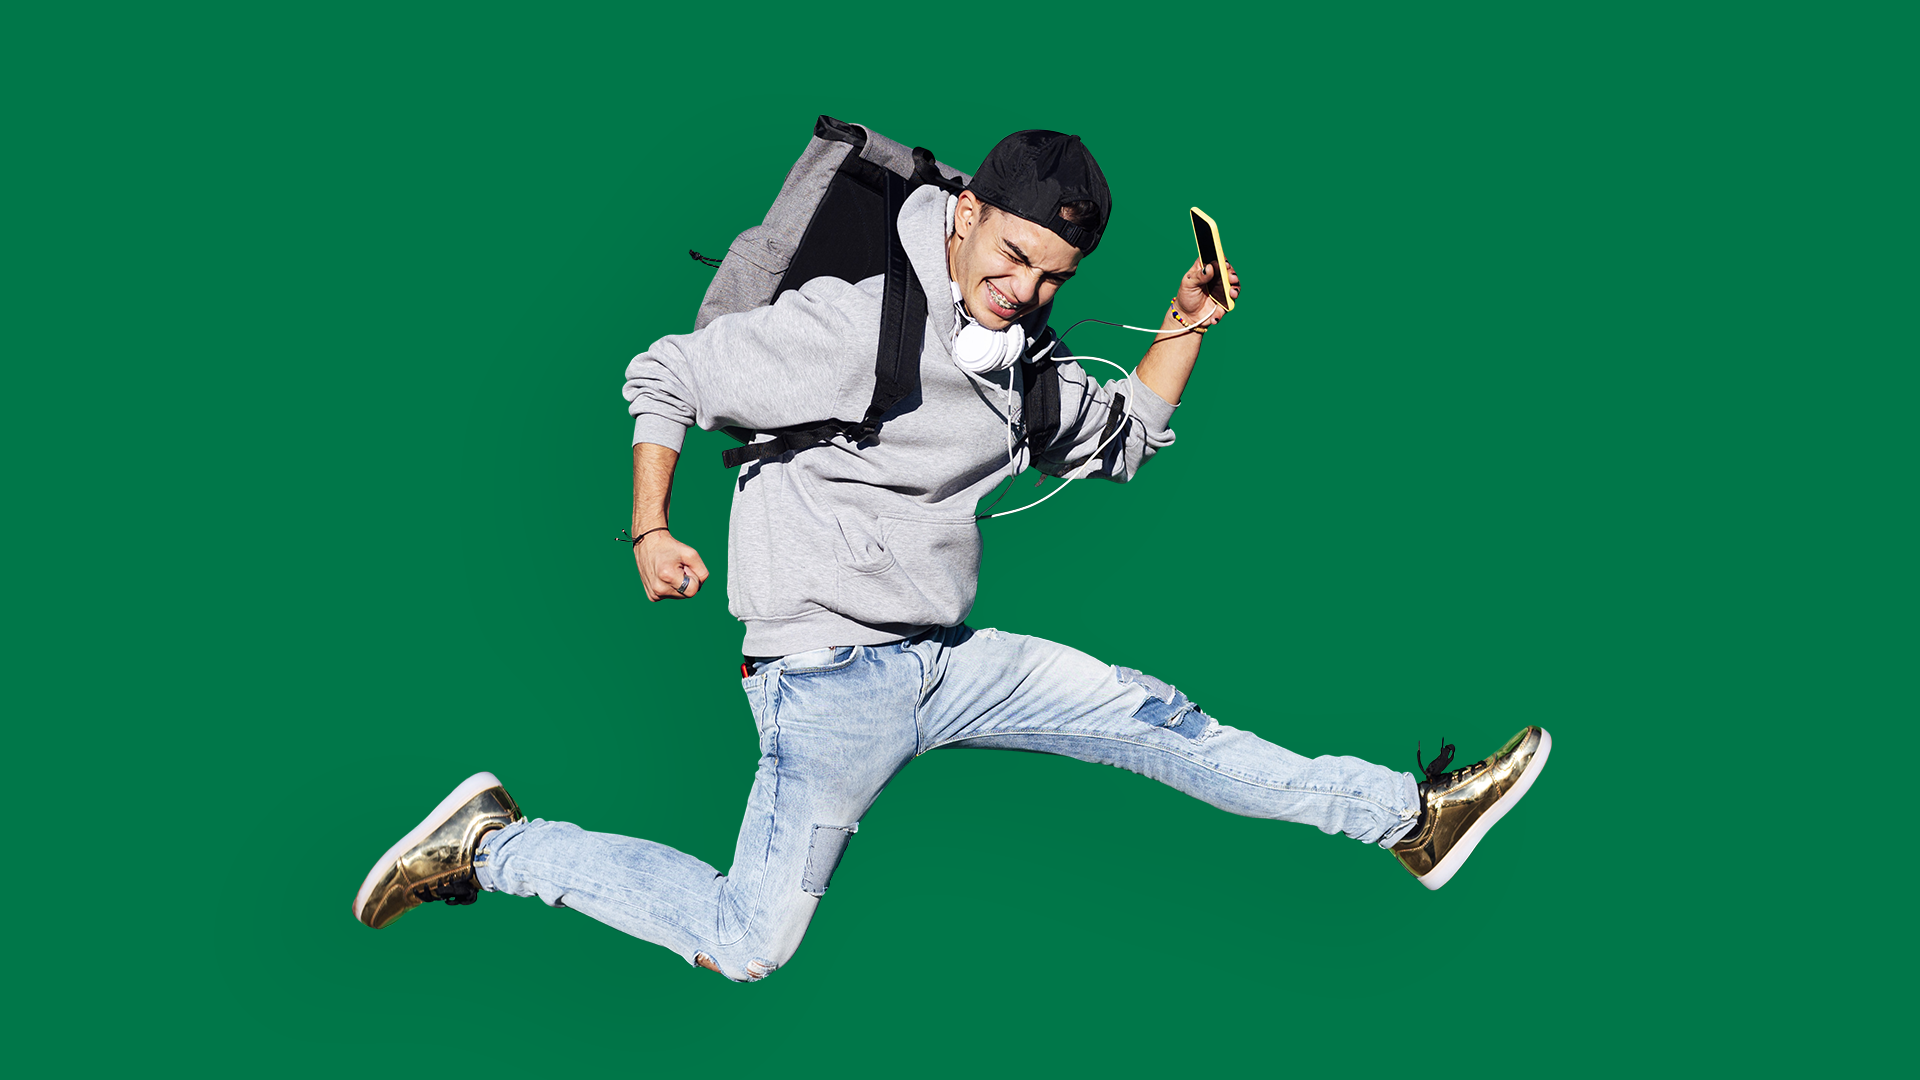 Adolescent qui saute joyeusement dans les airs avec son sac à dos bien ajusté sur son dos